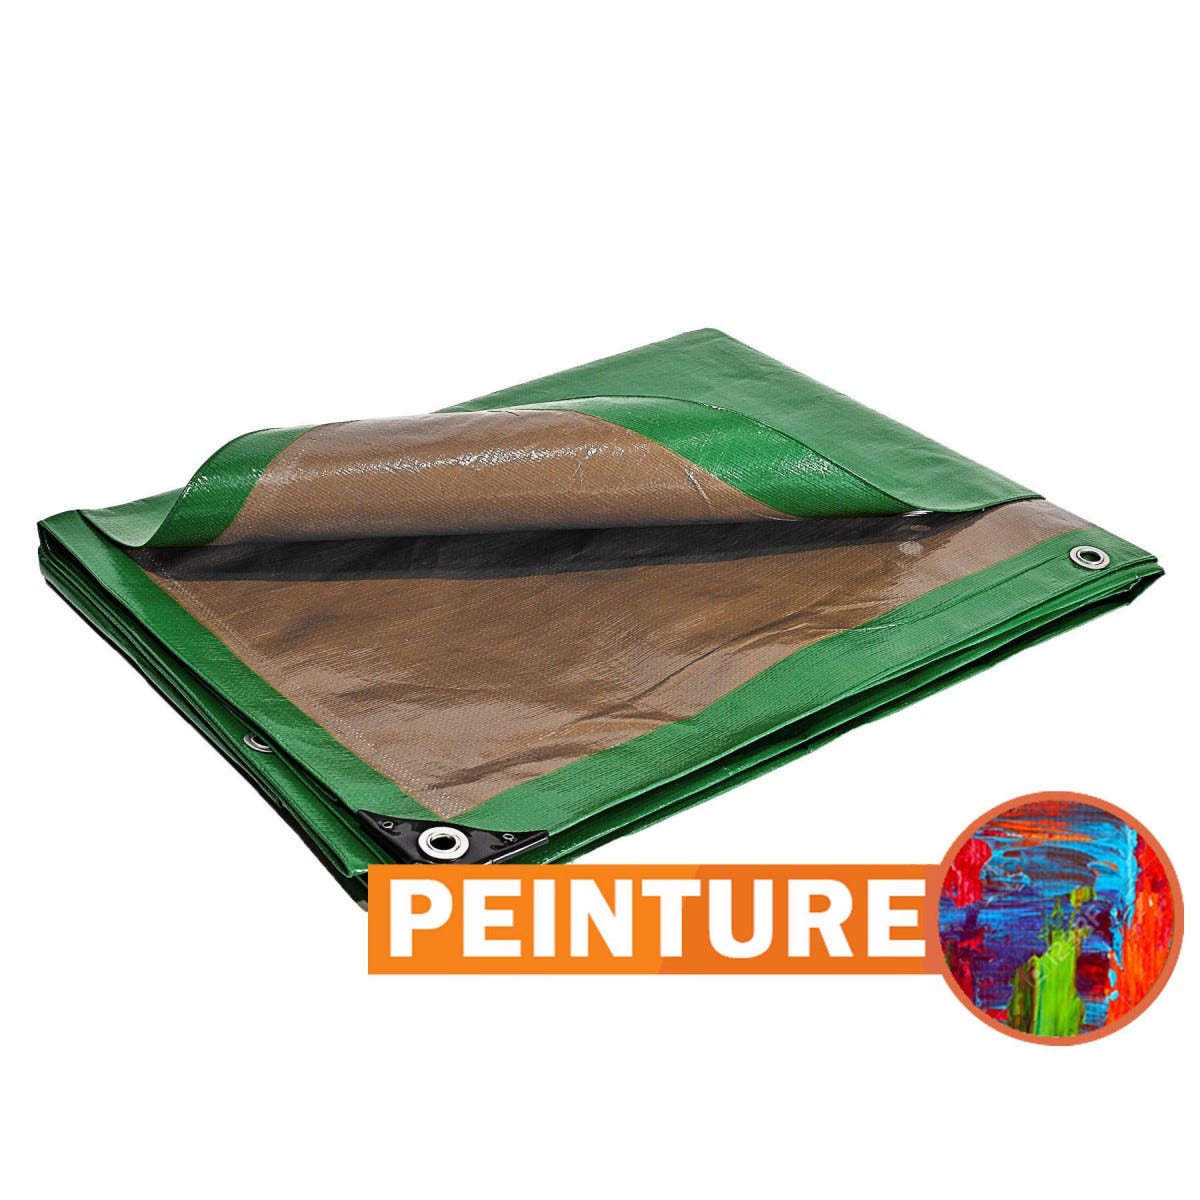 Bâche Peinture 6x10 m - TECPLAST 250PE - Verte et Marron - Haute Performance - Bâche de protection Peinture pour sol et meuble 4